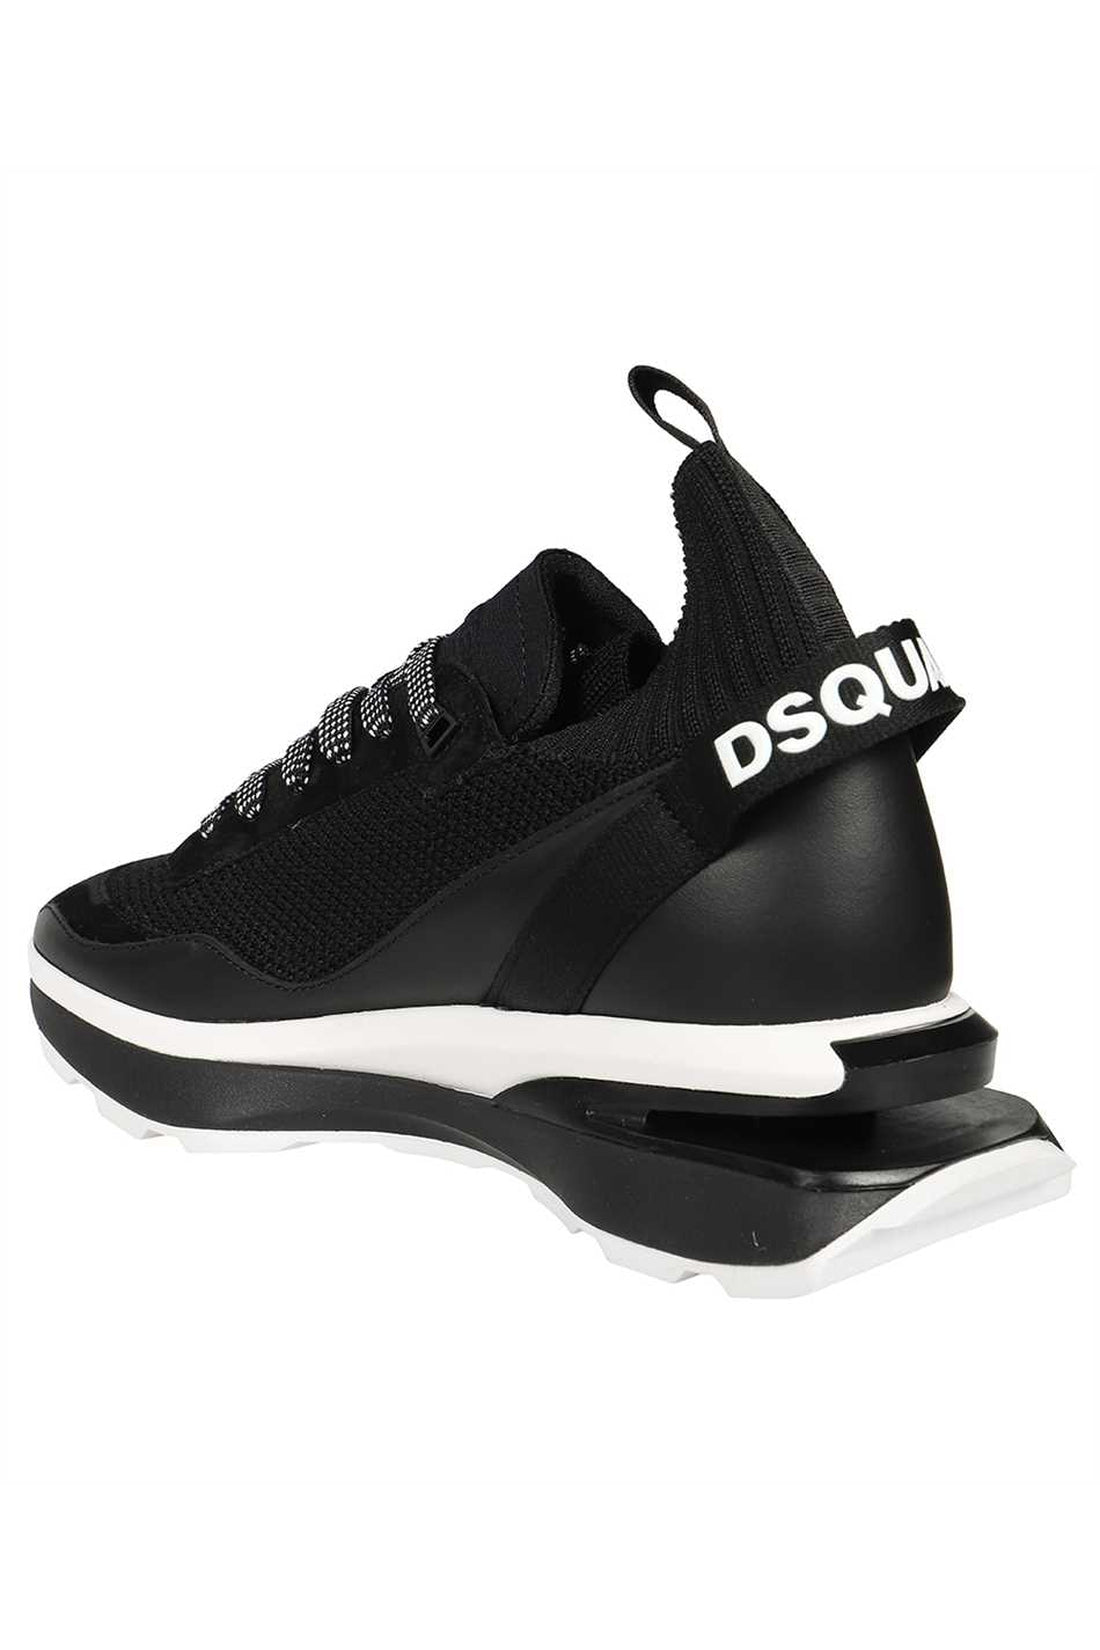 Dsquared2-OUTLET-SALE-Slash mid-top sneakers-ARCHIVIST